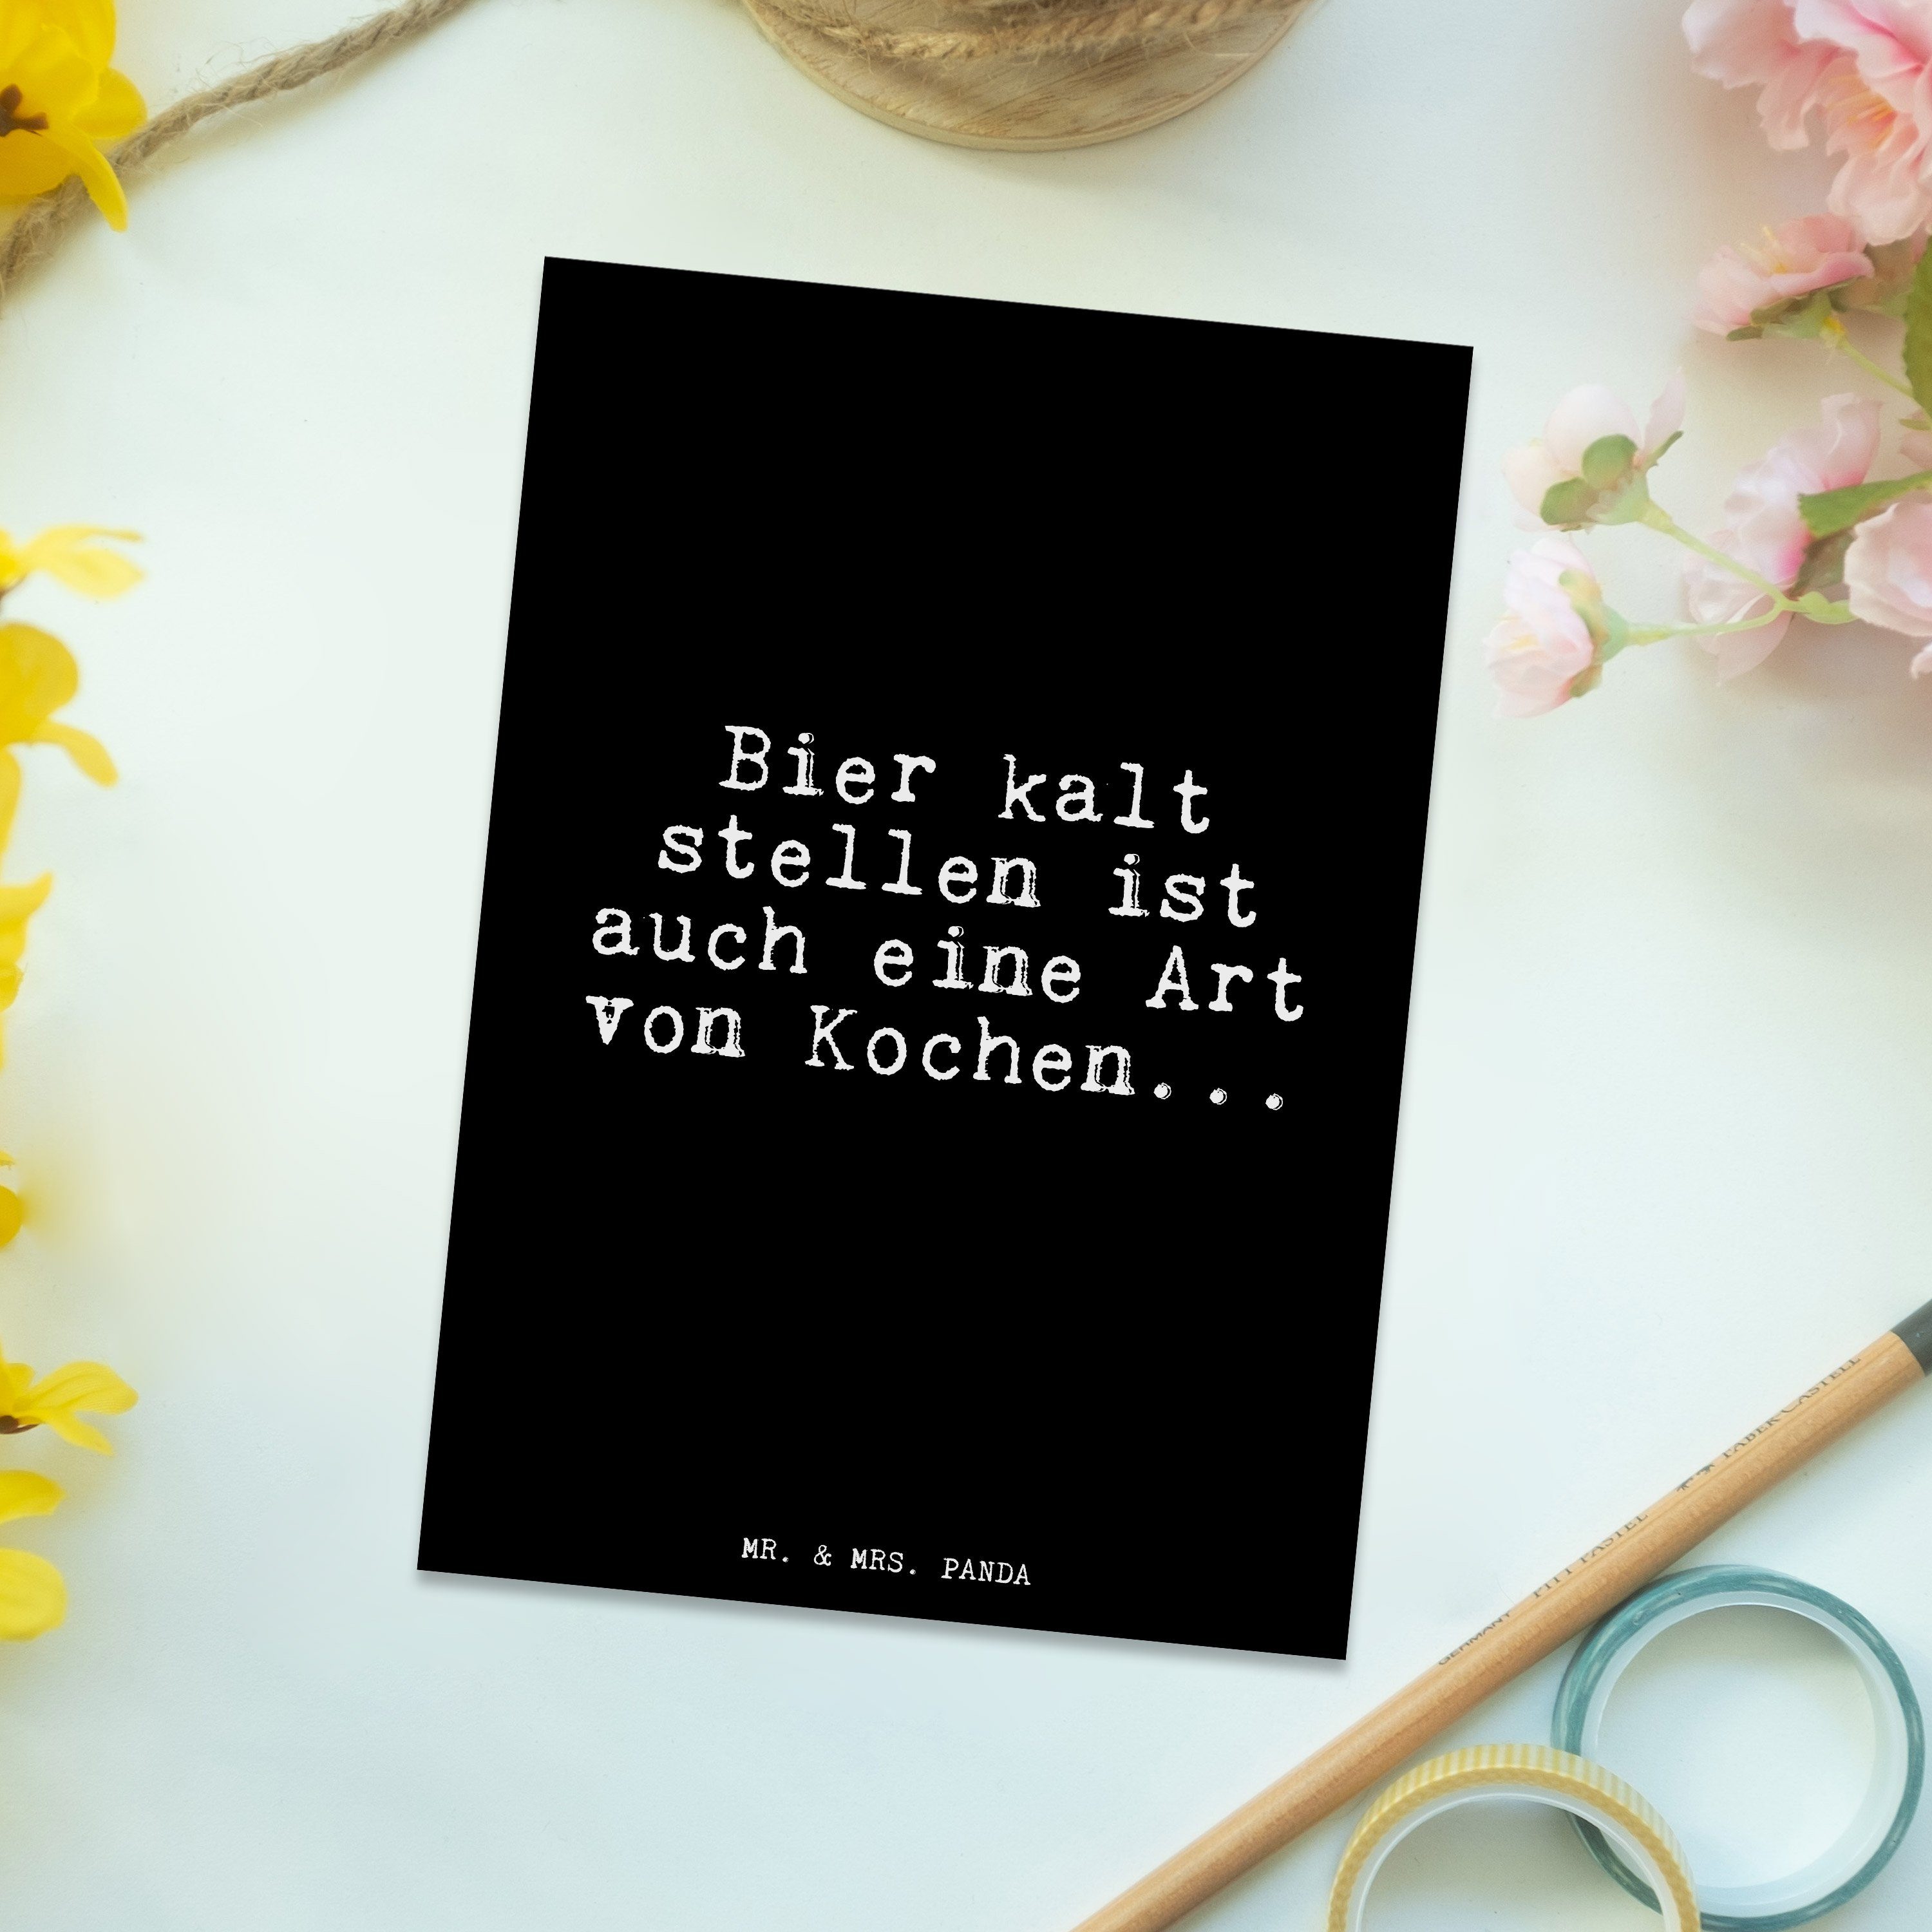 stellen kalt - Schwarz & Bier Mrs. Glizer Panda Männer, Geschenk, - ist... Postkarte Mr. Spruch